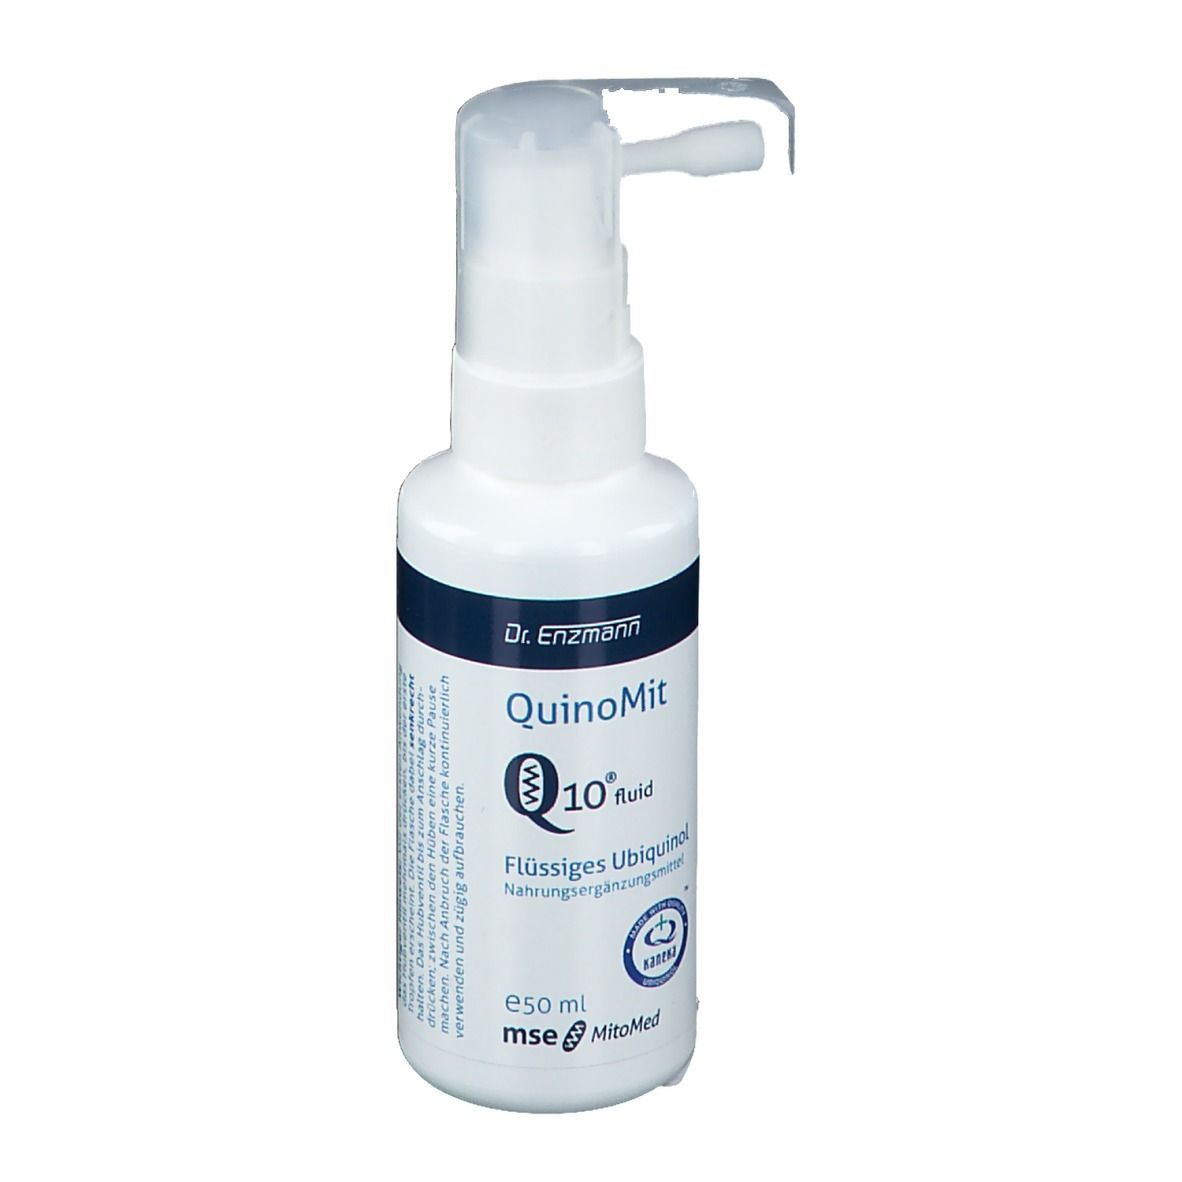 QuinoMit Q10® fluide